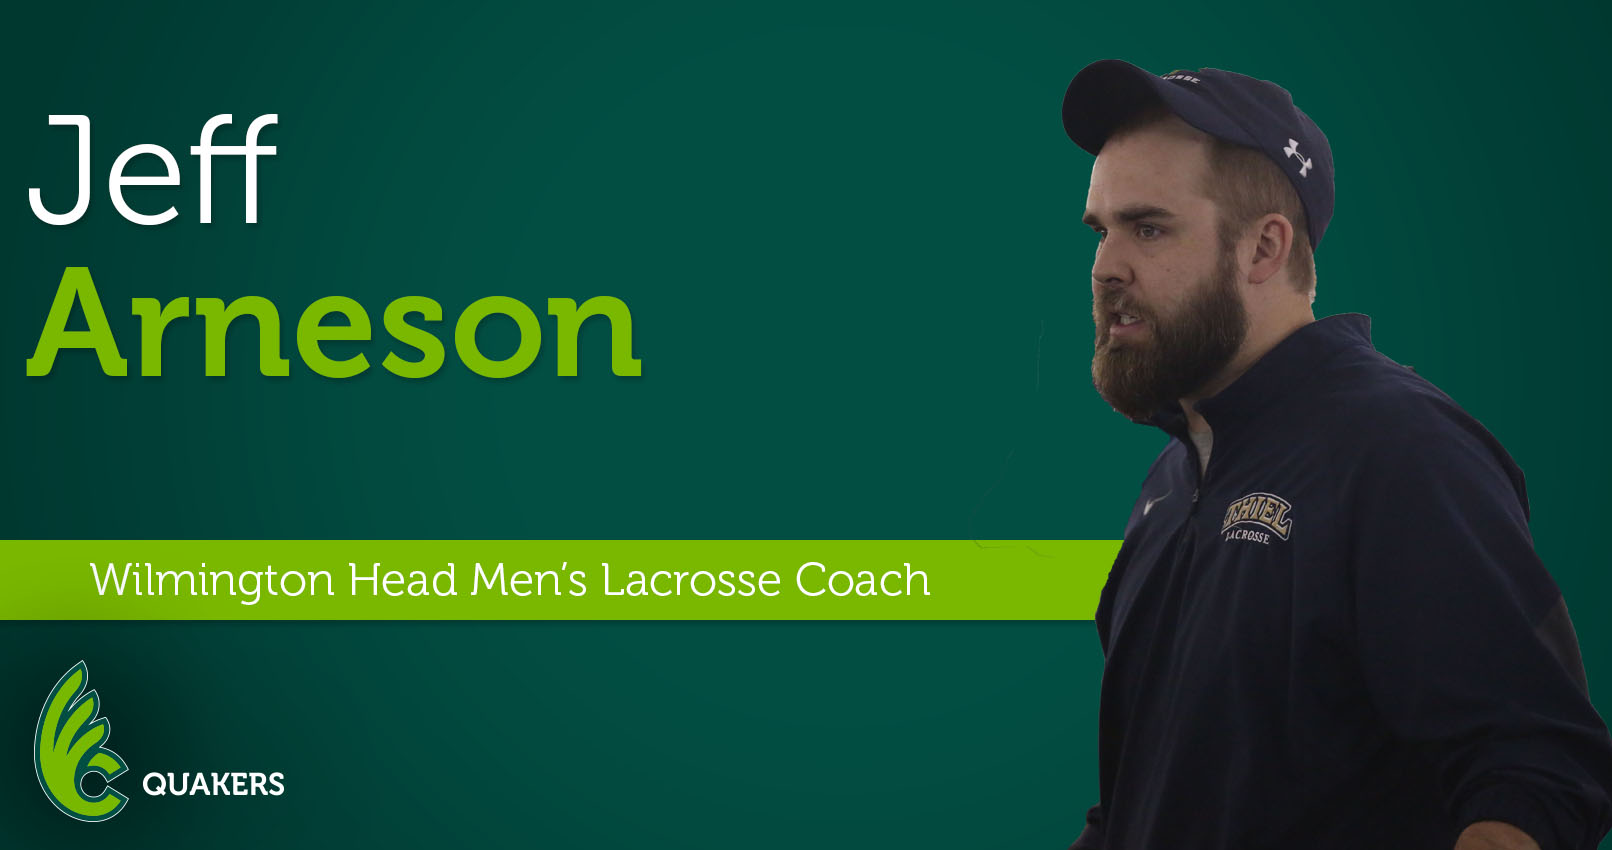 Jeff Arneson Named Head Men's Lacrosse Coach